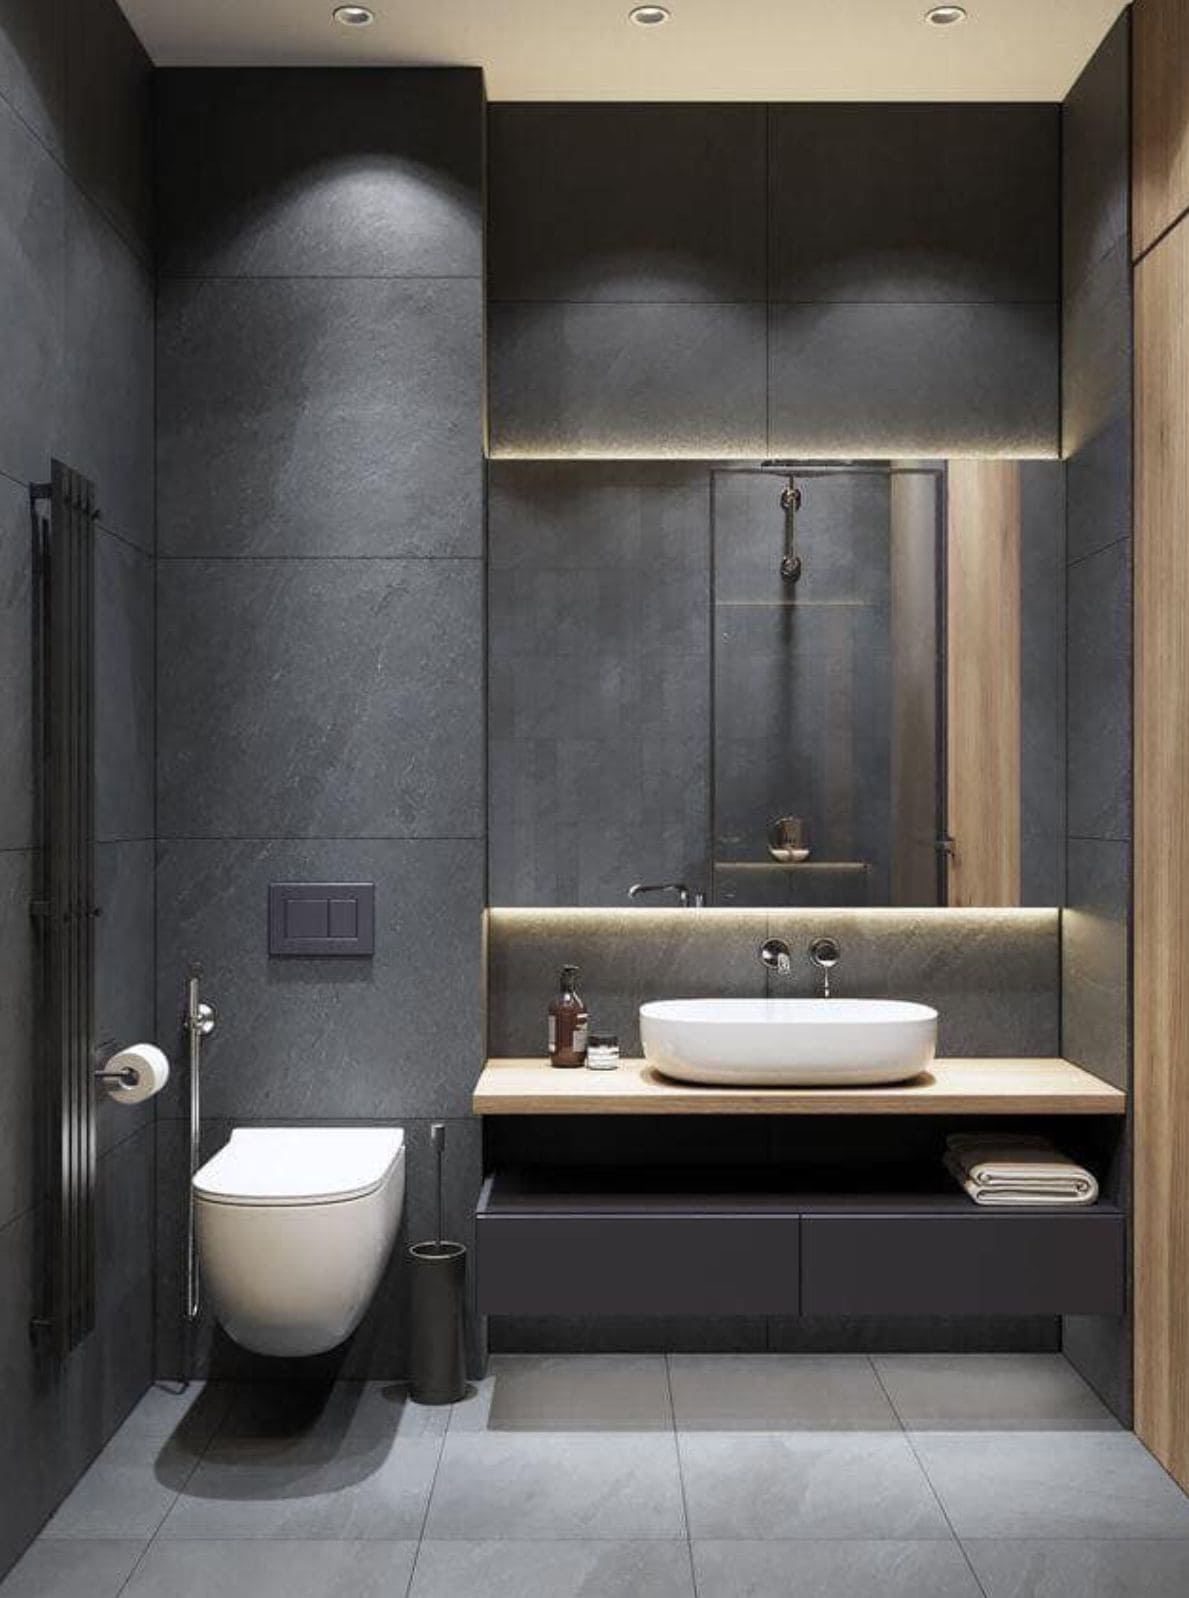 Để thiết kế phòng tắm đẹp đơn giản gia chủ nên sử dụng màu trung tính để tạo cảm giác rộng rãi, thoáng mát